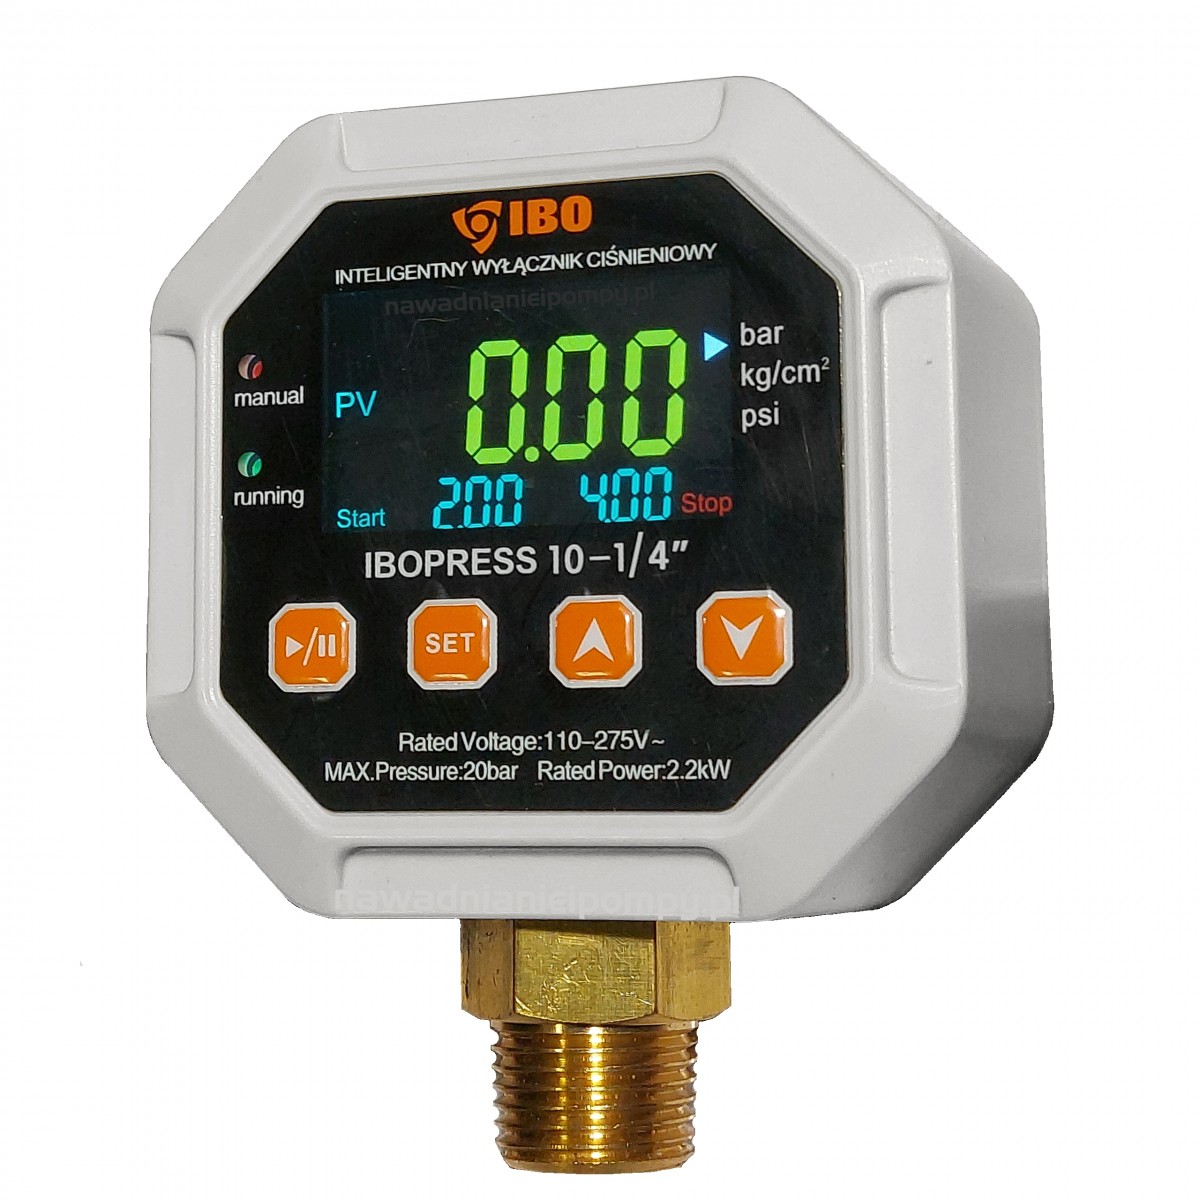 IBOPRESS 10 1/4" elektroniczny wyłącznik ciśnieniowy + suchobieg 230V IBO